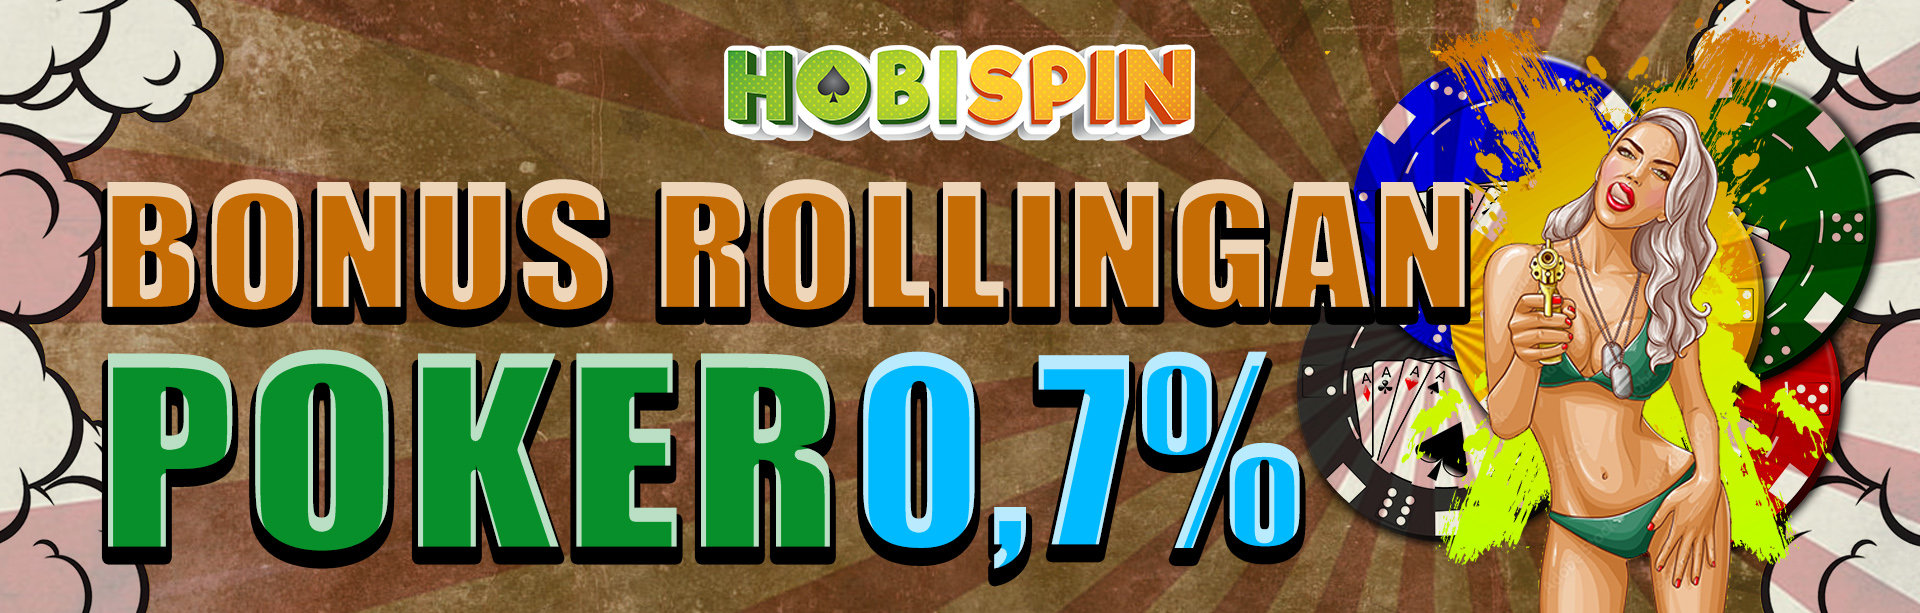 Hobispin, situs judi online terpercaya menawarkan BONUS ROLLINGAN 0,7%